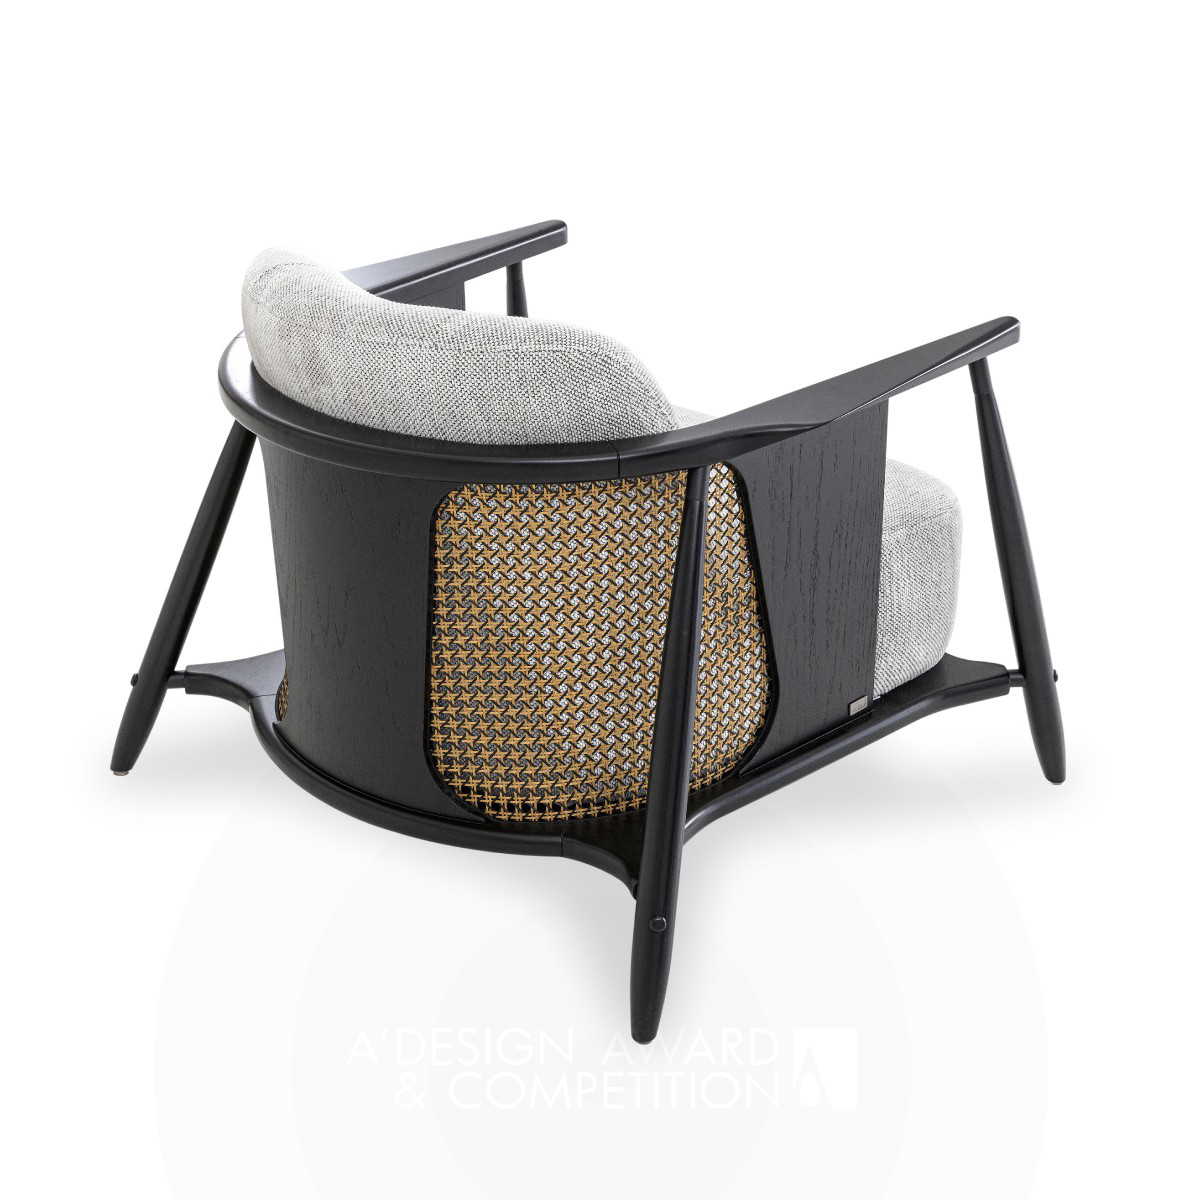 Лагуна: Уникальное сочетание материалов в дизайне кресла